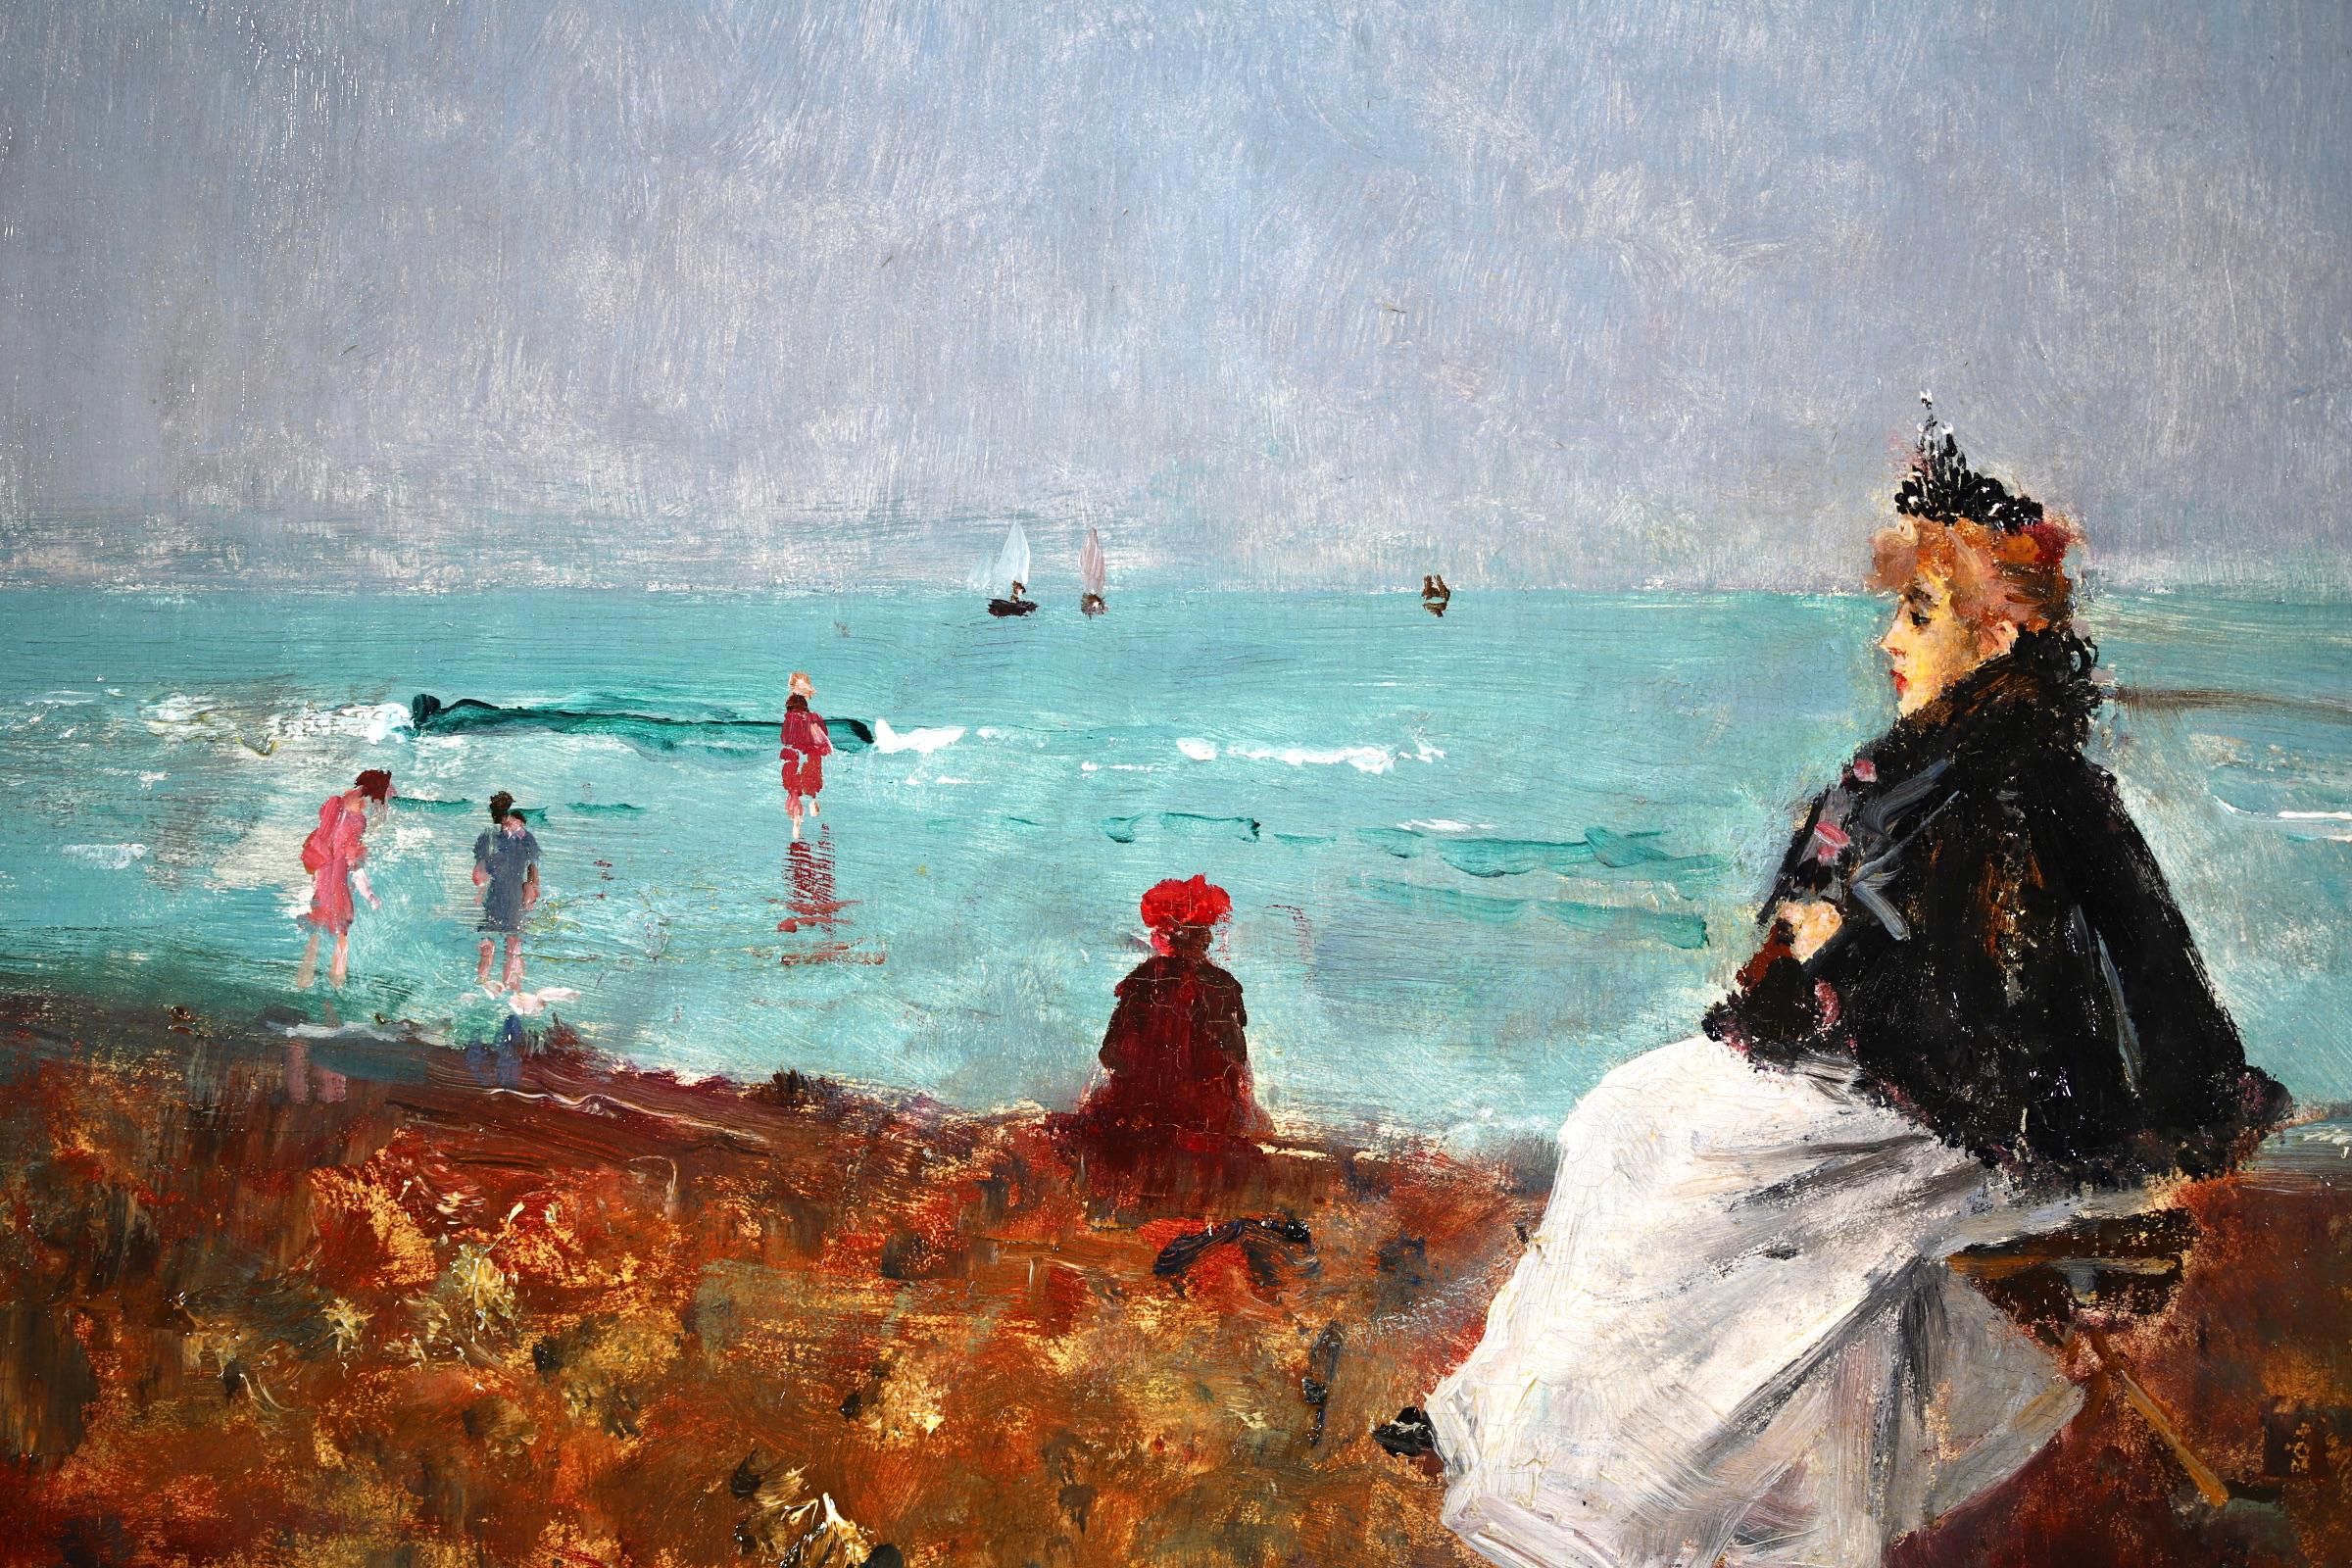 Signiert und datiert Figuren in Seelandschaft Öl auf Platte von belgischen impressionistischen Maler Alfred Emile Leopold Stevens. Das Werk zeigt eine elegante Frau, die auf einem Stand am Strand sitzt, während Kinder im türkisfarbenen Meer paddeln.